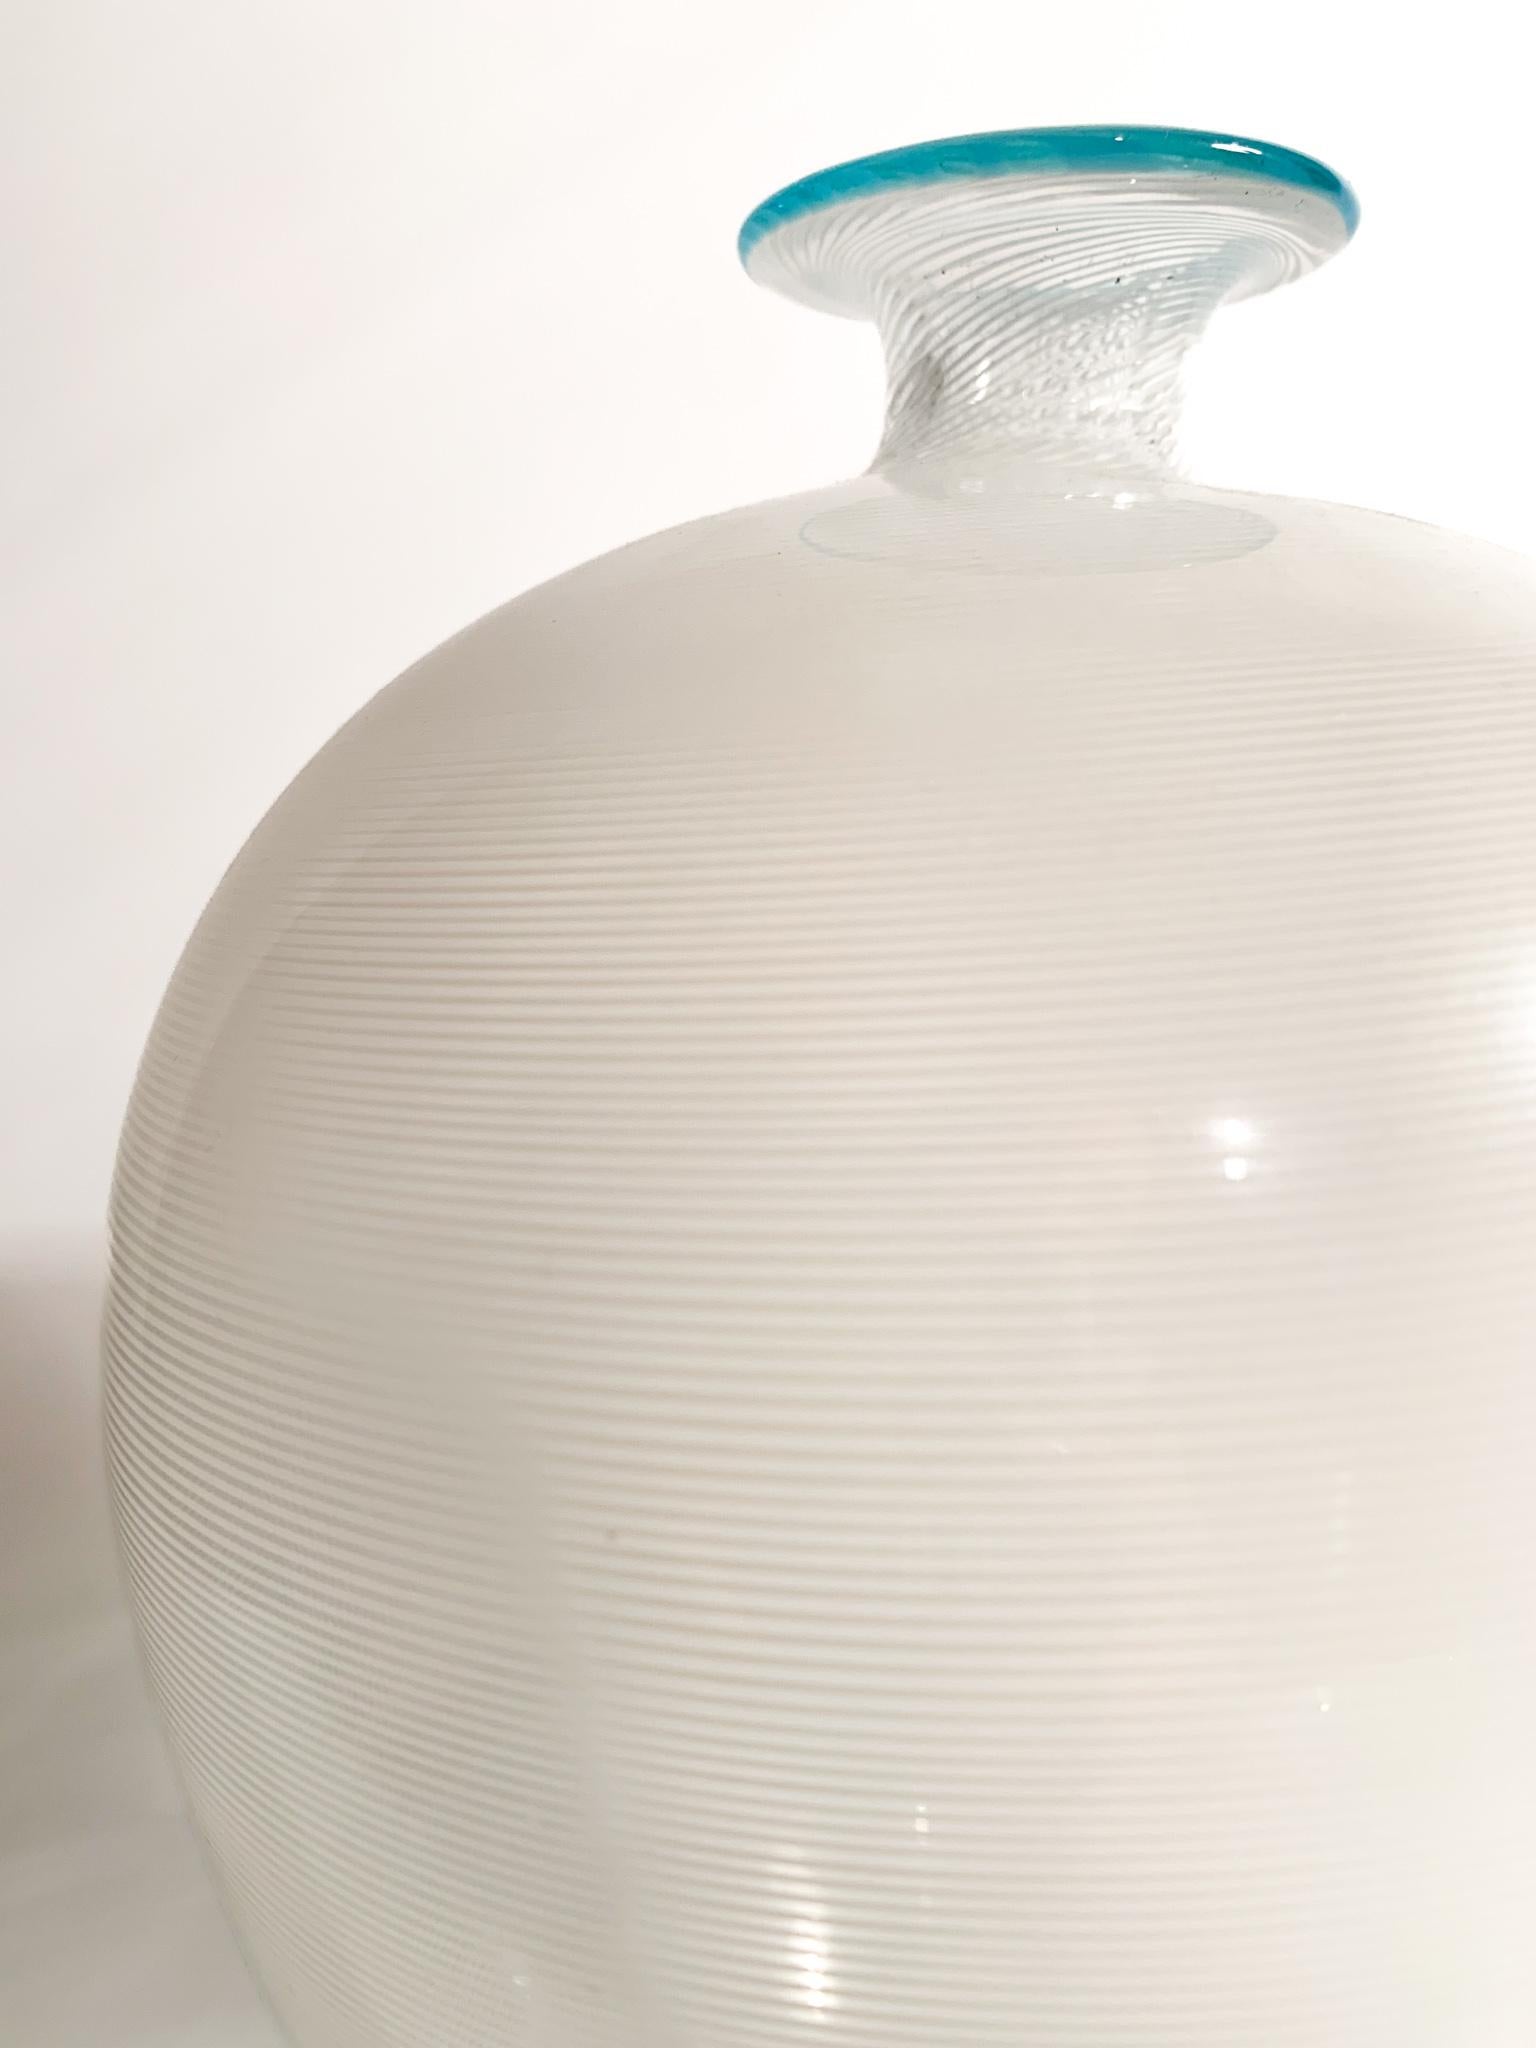 Veronese Model Filigree Vase in Murano Glass by Barovier & Toso, 1950s For Sale 1